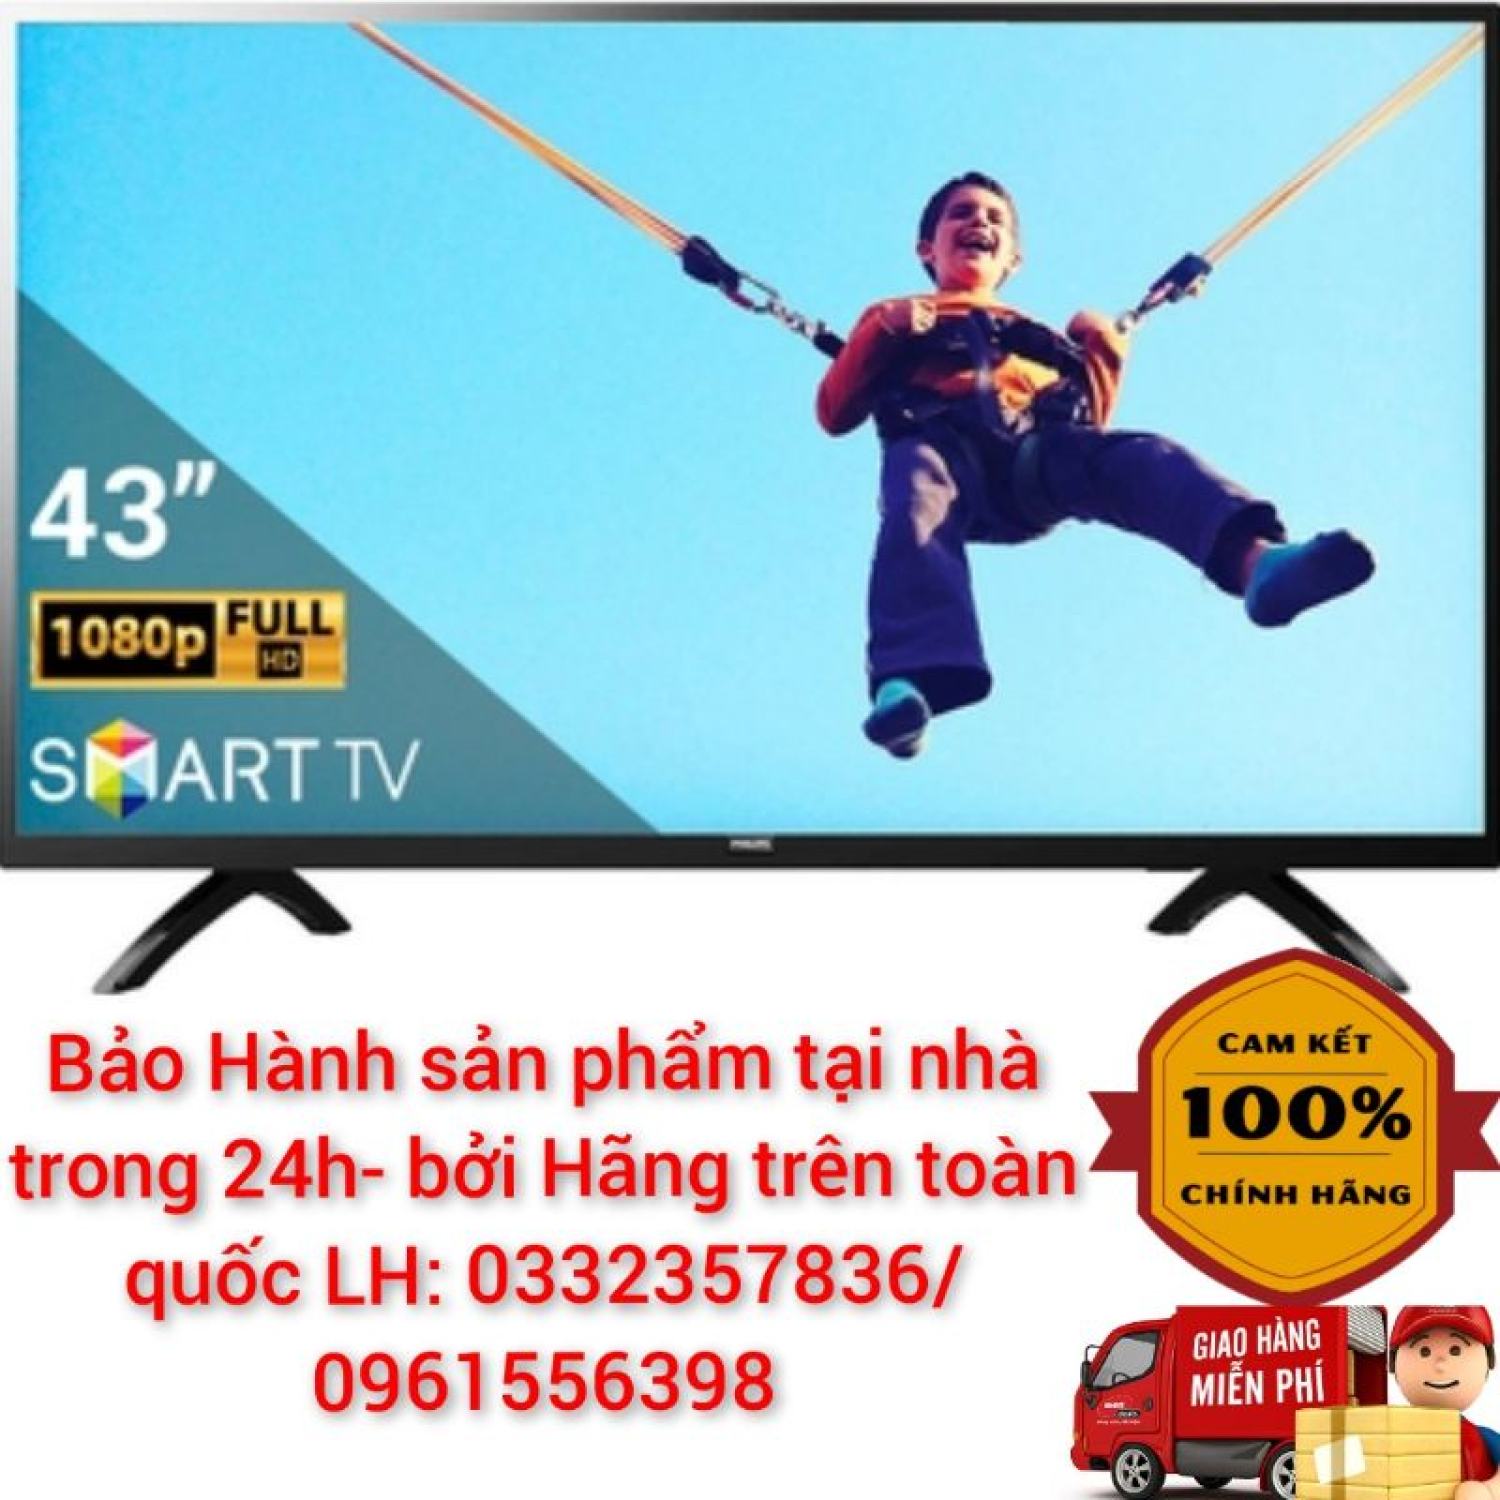 Bảng giá Smart Tivi Philips 43 Inch Full HD - 43PFT5883/74 < Chính hãng BH:24 tháng tại nhà toàn quốc >